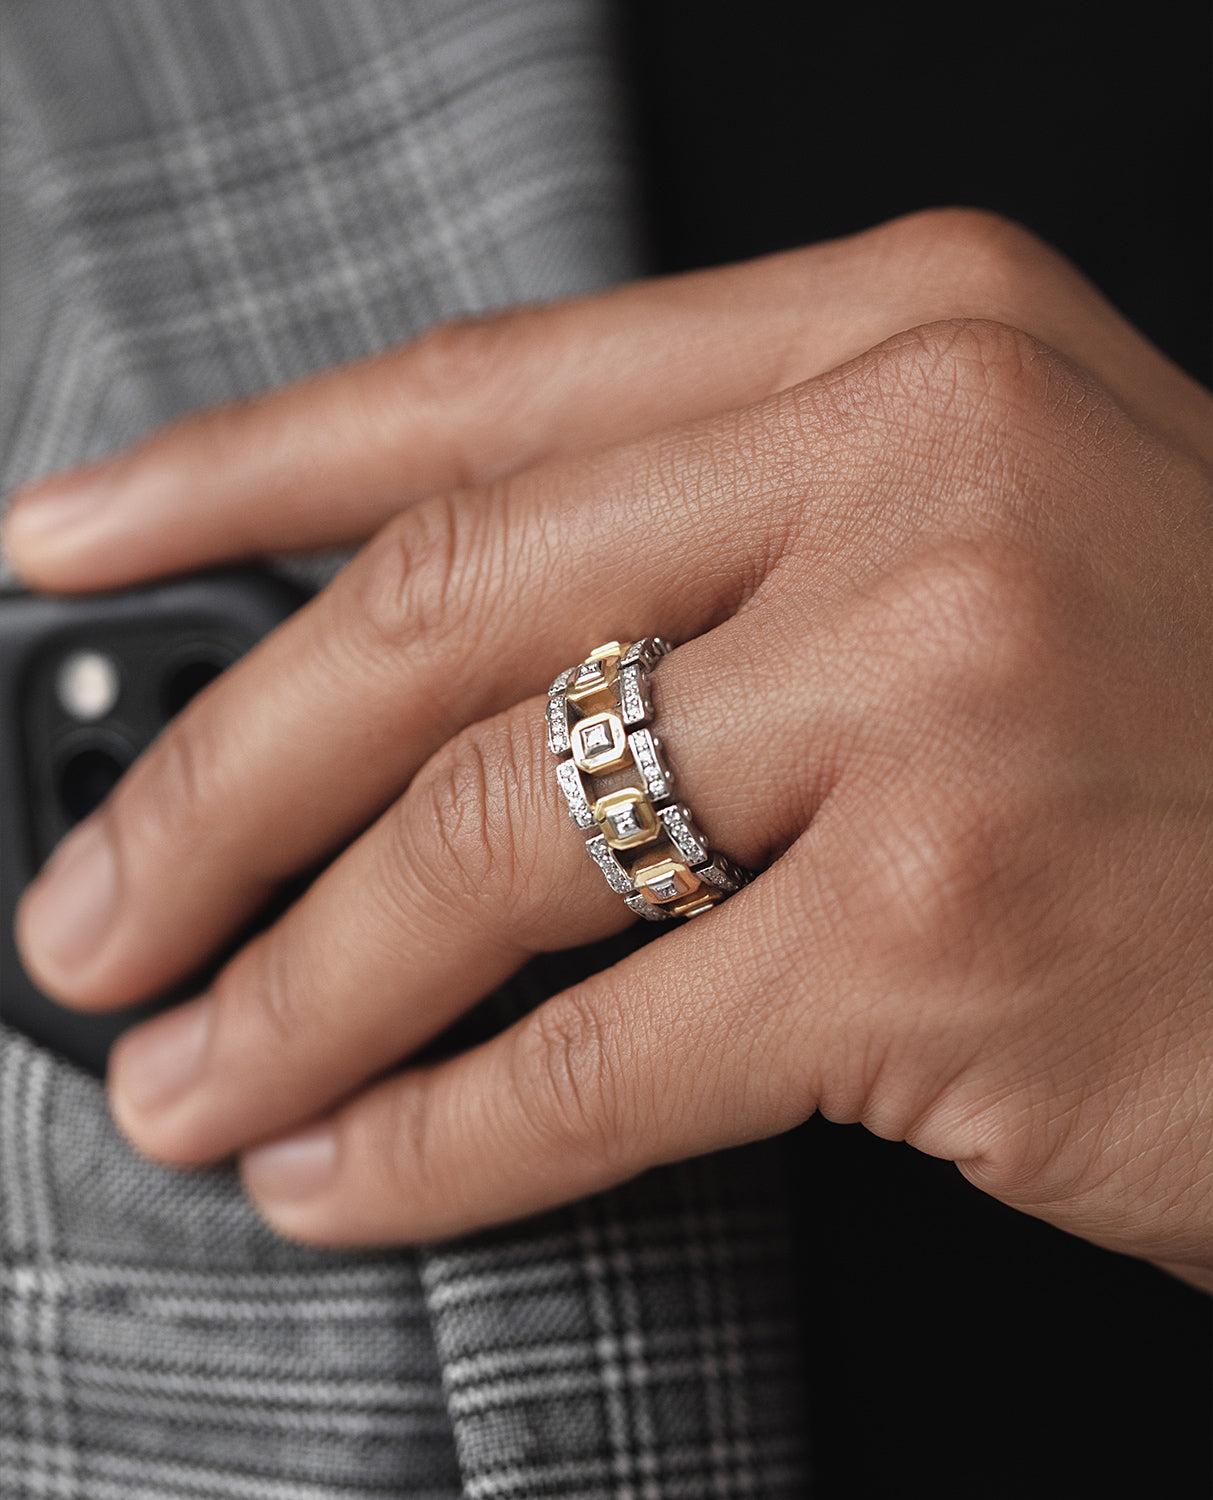 Das Design dieses zweifarbigen Armbands verbindet zwei verschiedene Stile in seinen Variationen von 1,20 Karat weißem Diamanten in Pave-Fassung und Metallen: zeitgenössisch klassisch und topmodern. Der La Paz ist ein außergewöhnliches Schmuckstück